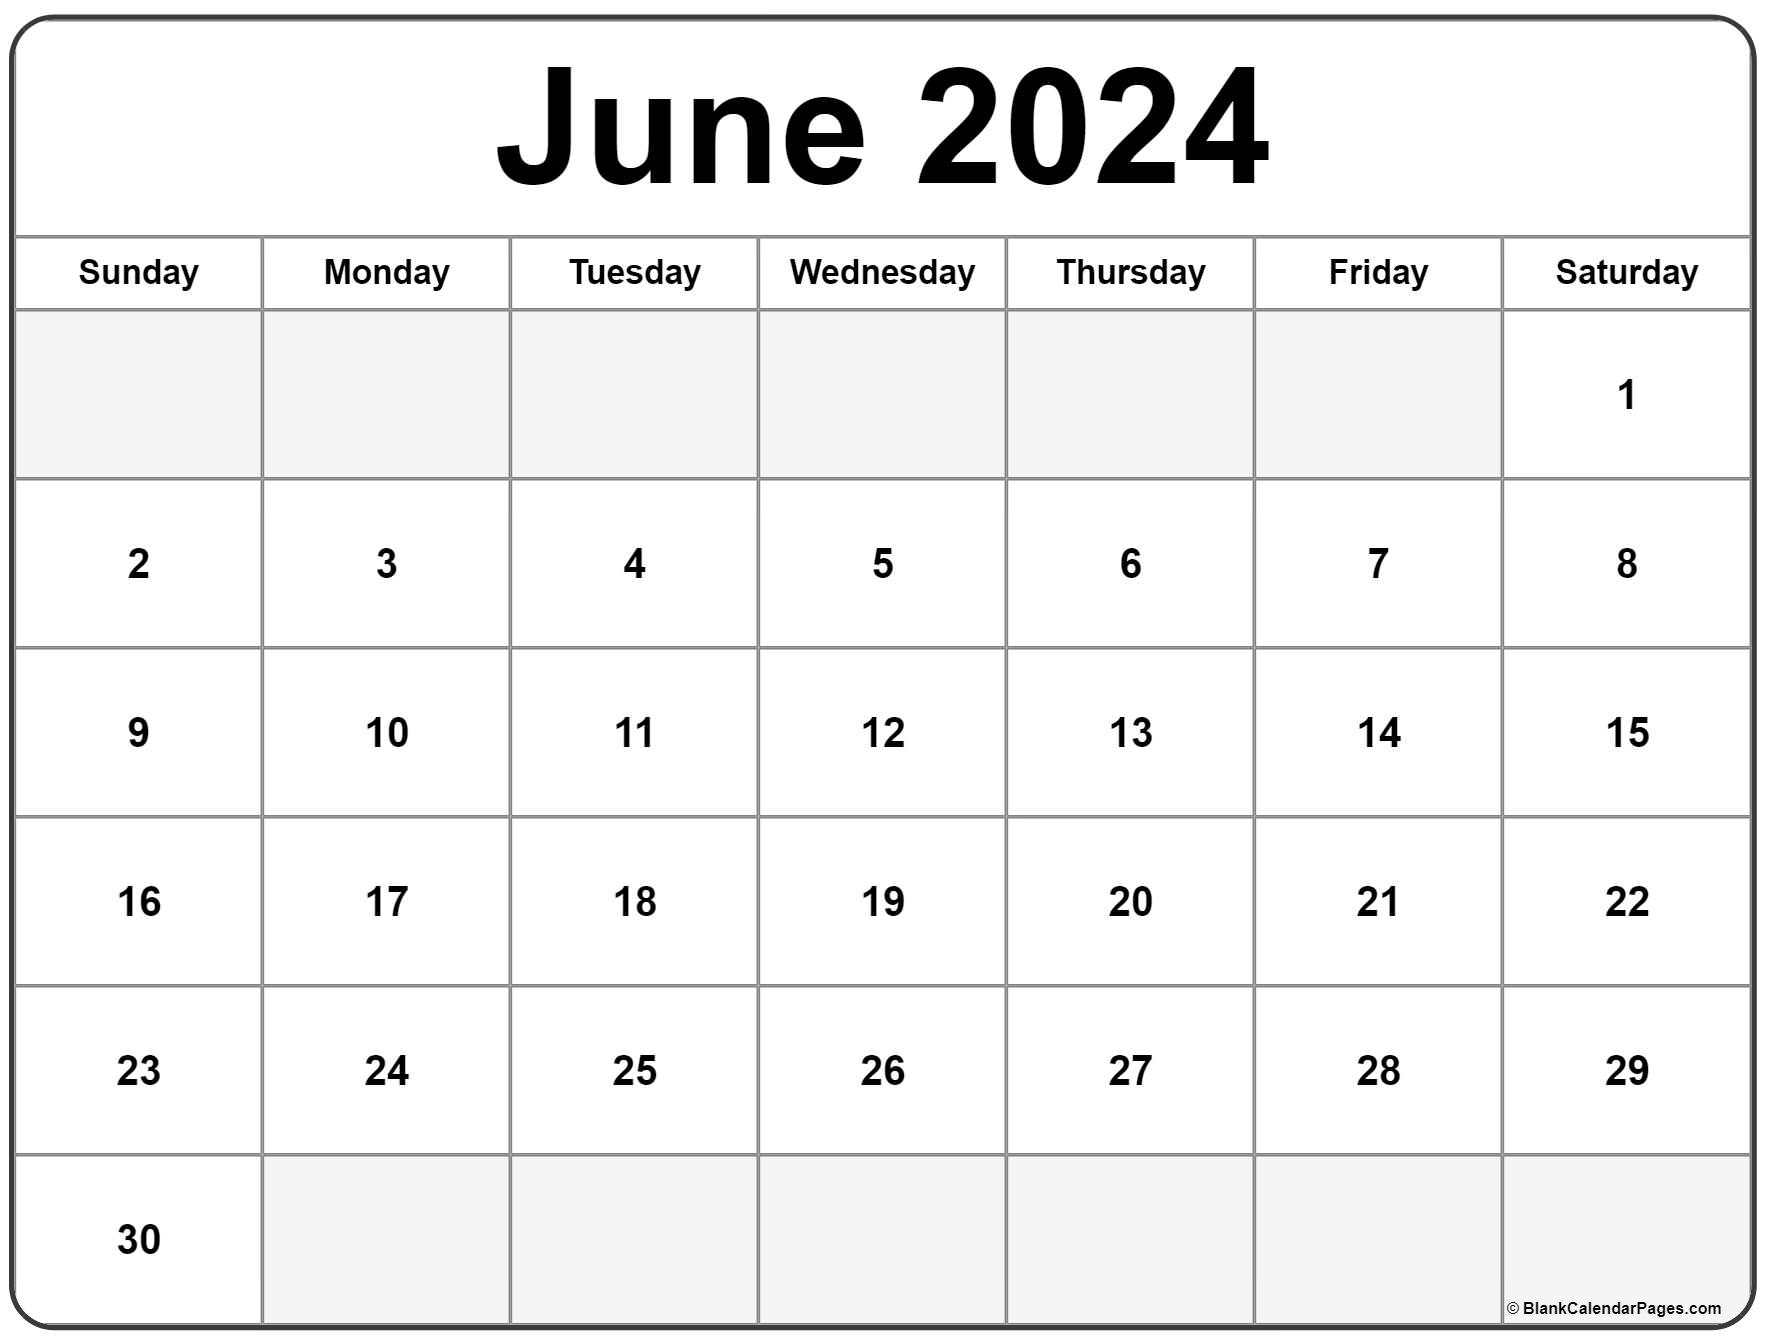 May June 2022 Calendar Printable June 2022 Calendar | Free Printable Calendar Templates